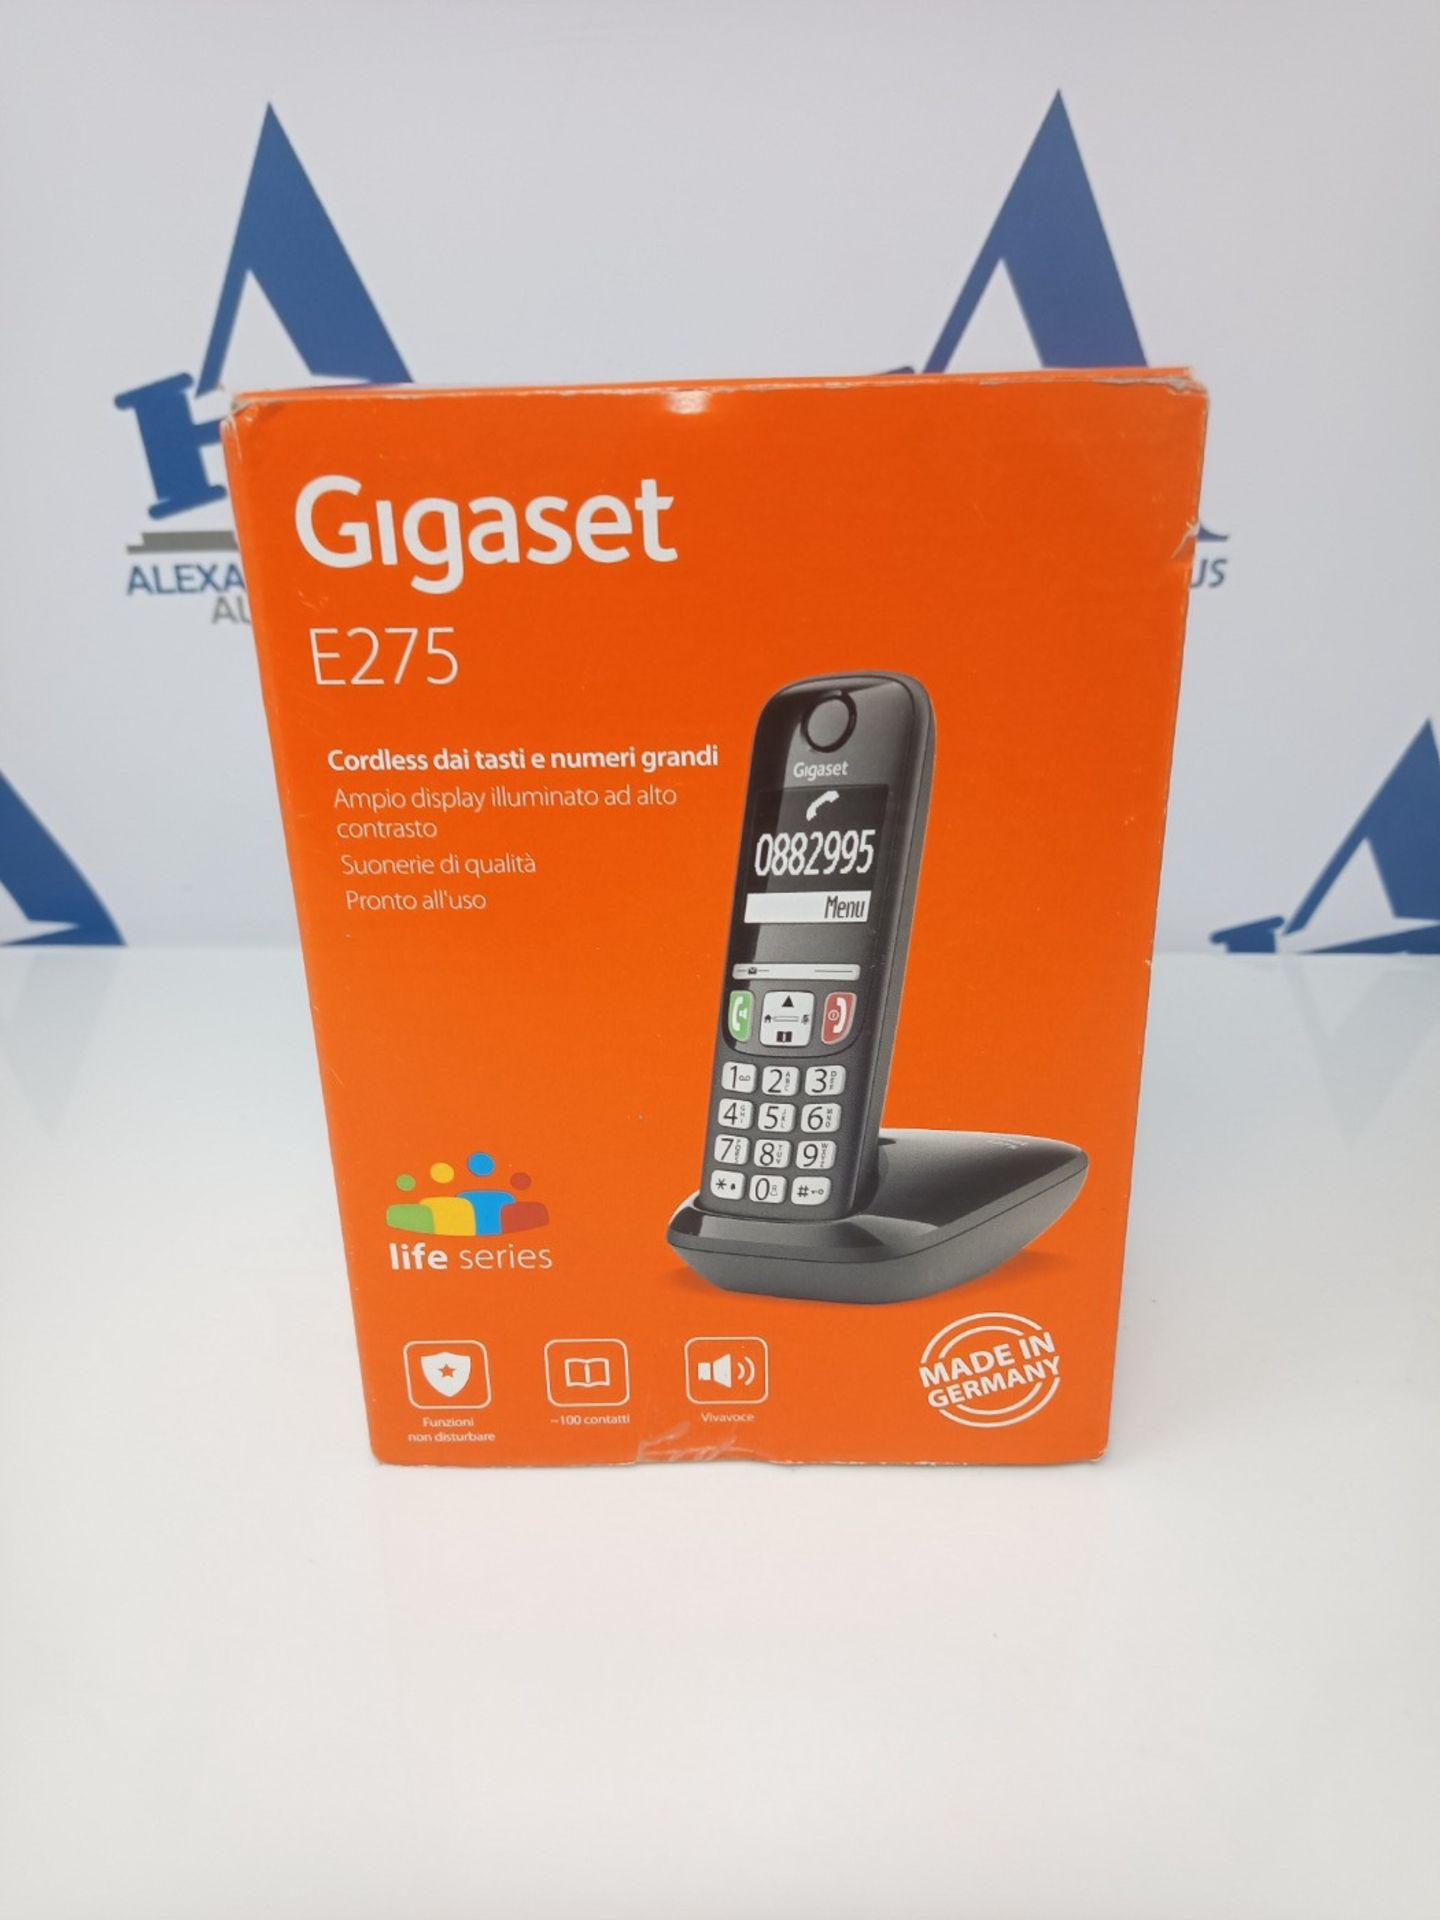 Gigaset E275 Il nuovo telefono cordless dai tasti grandi, numeri grandi e suonerie for - Bild 2 aus 3